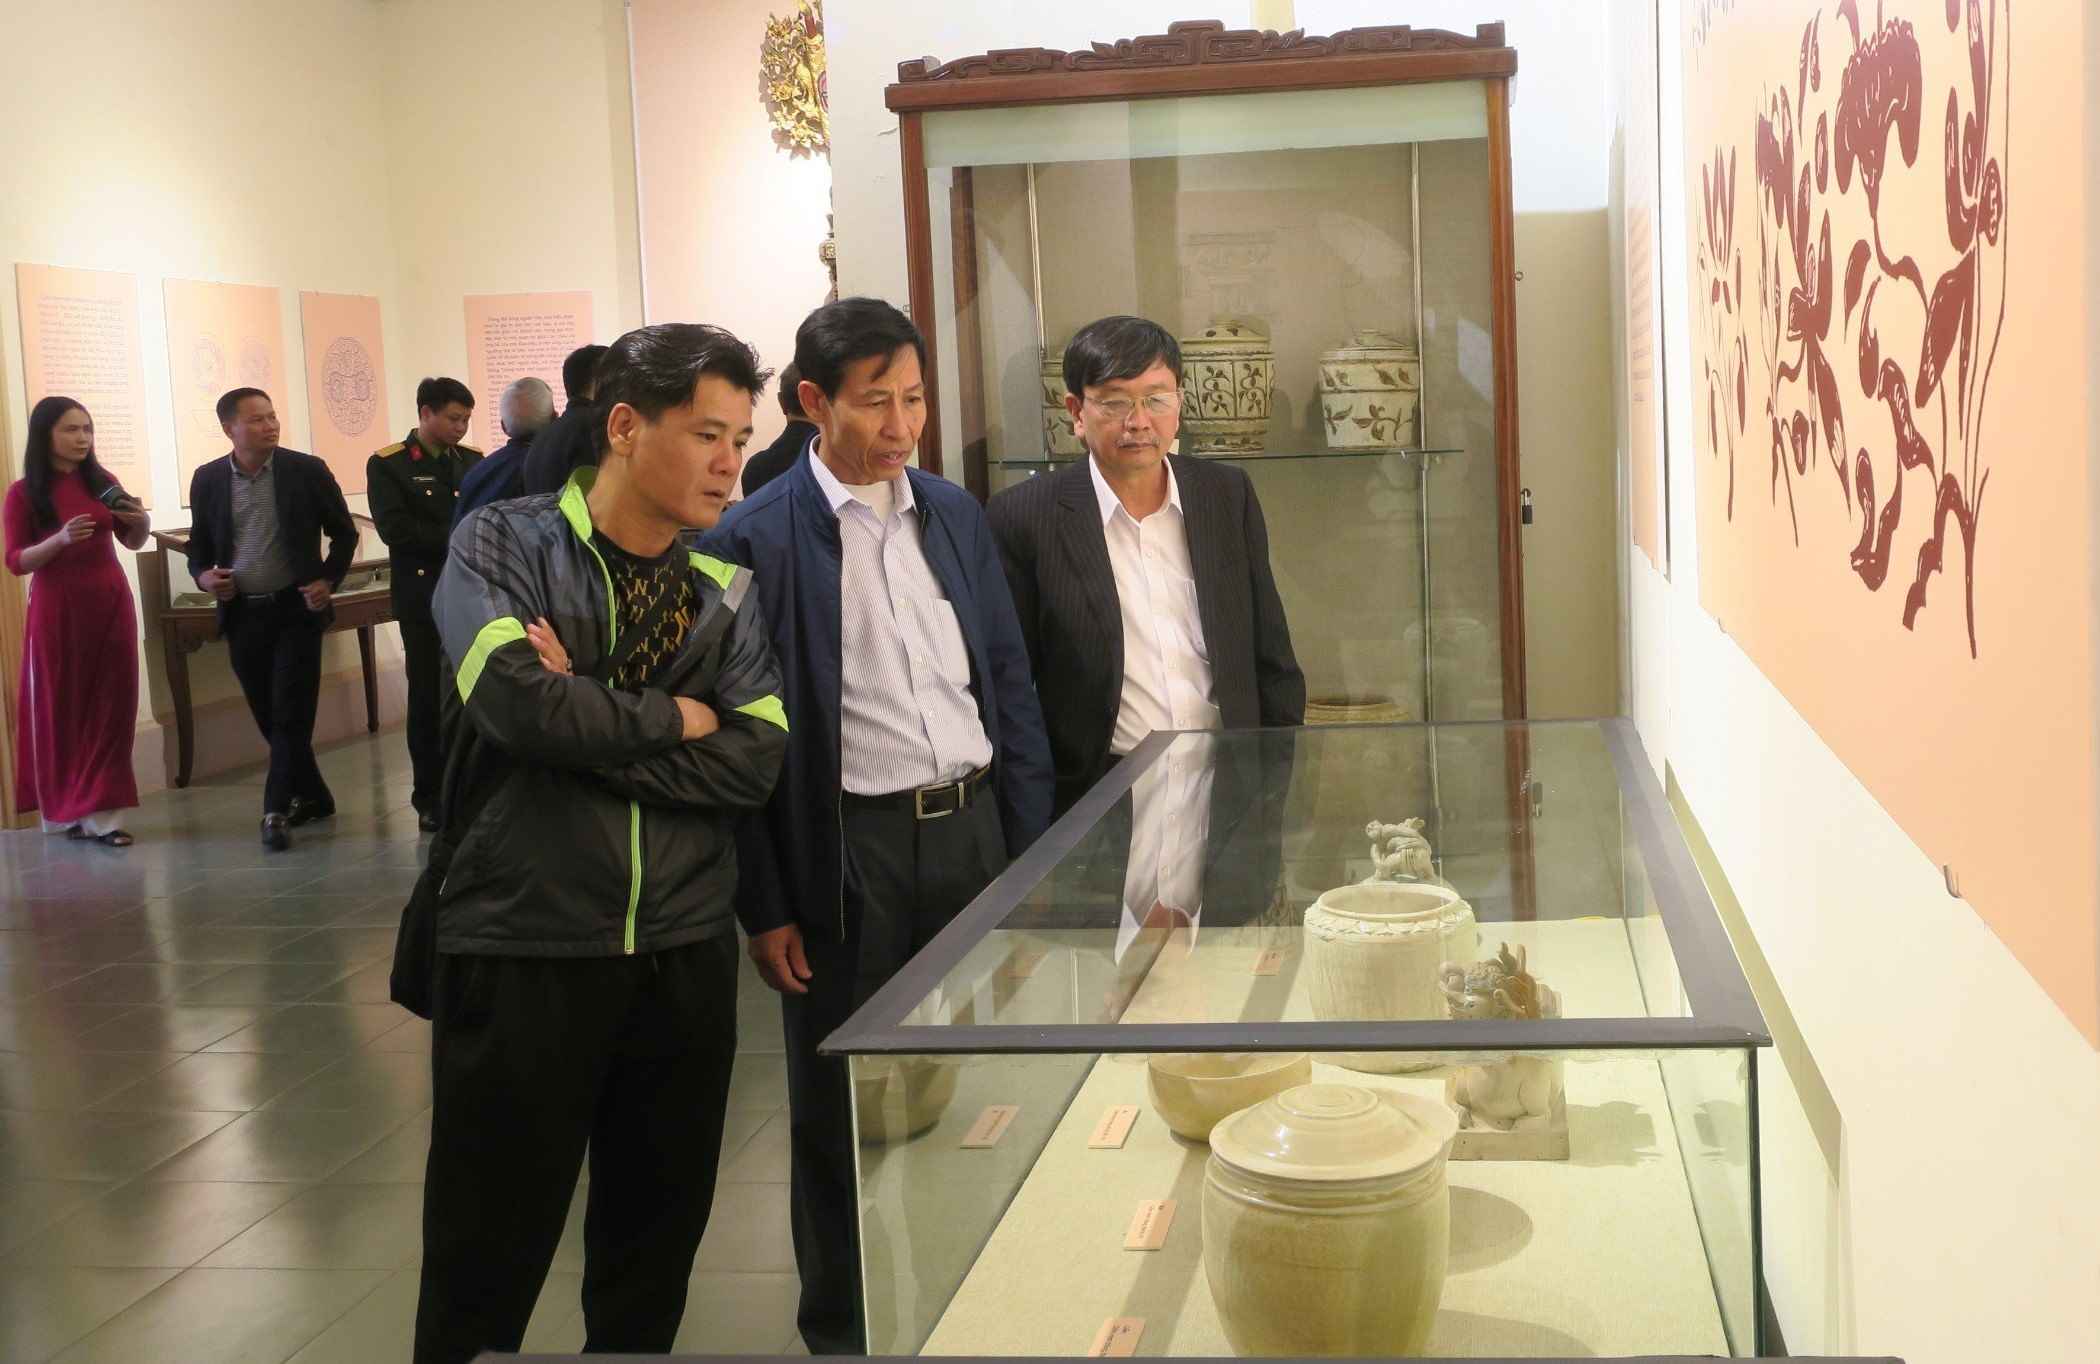 Bảo tàng Hải Phòng vừa phối hợp Hội Cổ vật Hải Phòng tổ chức khai mạc trưng bày Chuyên đề “Cổ vật Việt Nam” nhằm giới thiệu tới công chúng sự đa dạng loại hình và độc đáo của cổ vật Việt Nam. 